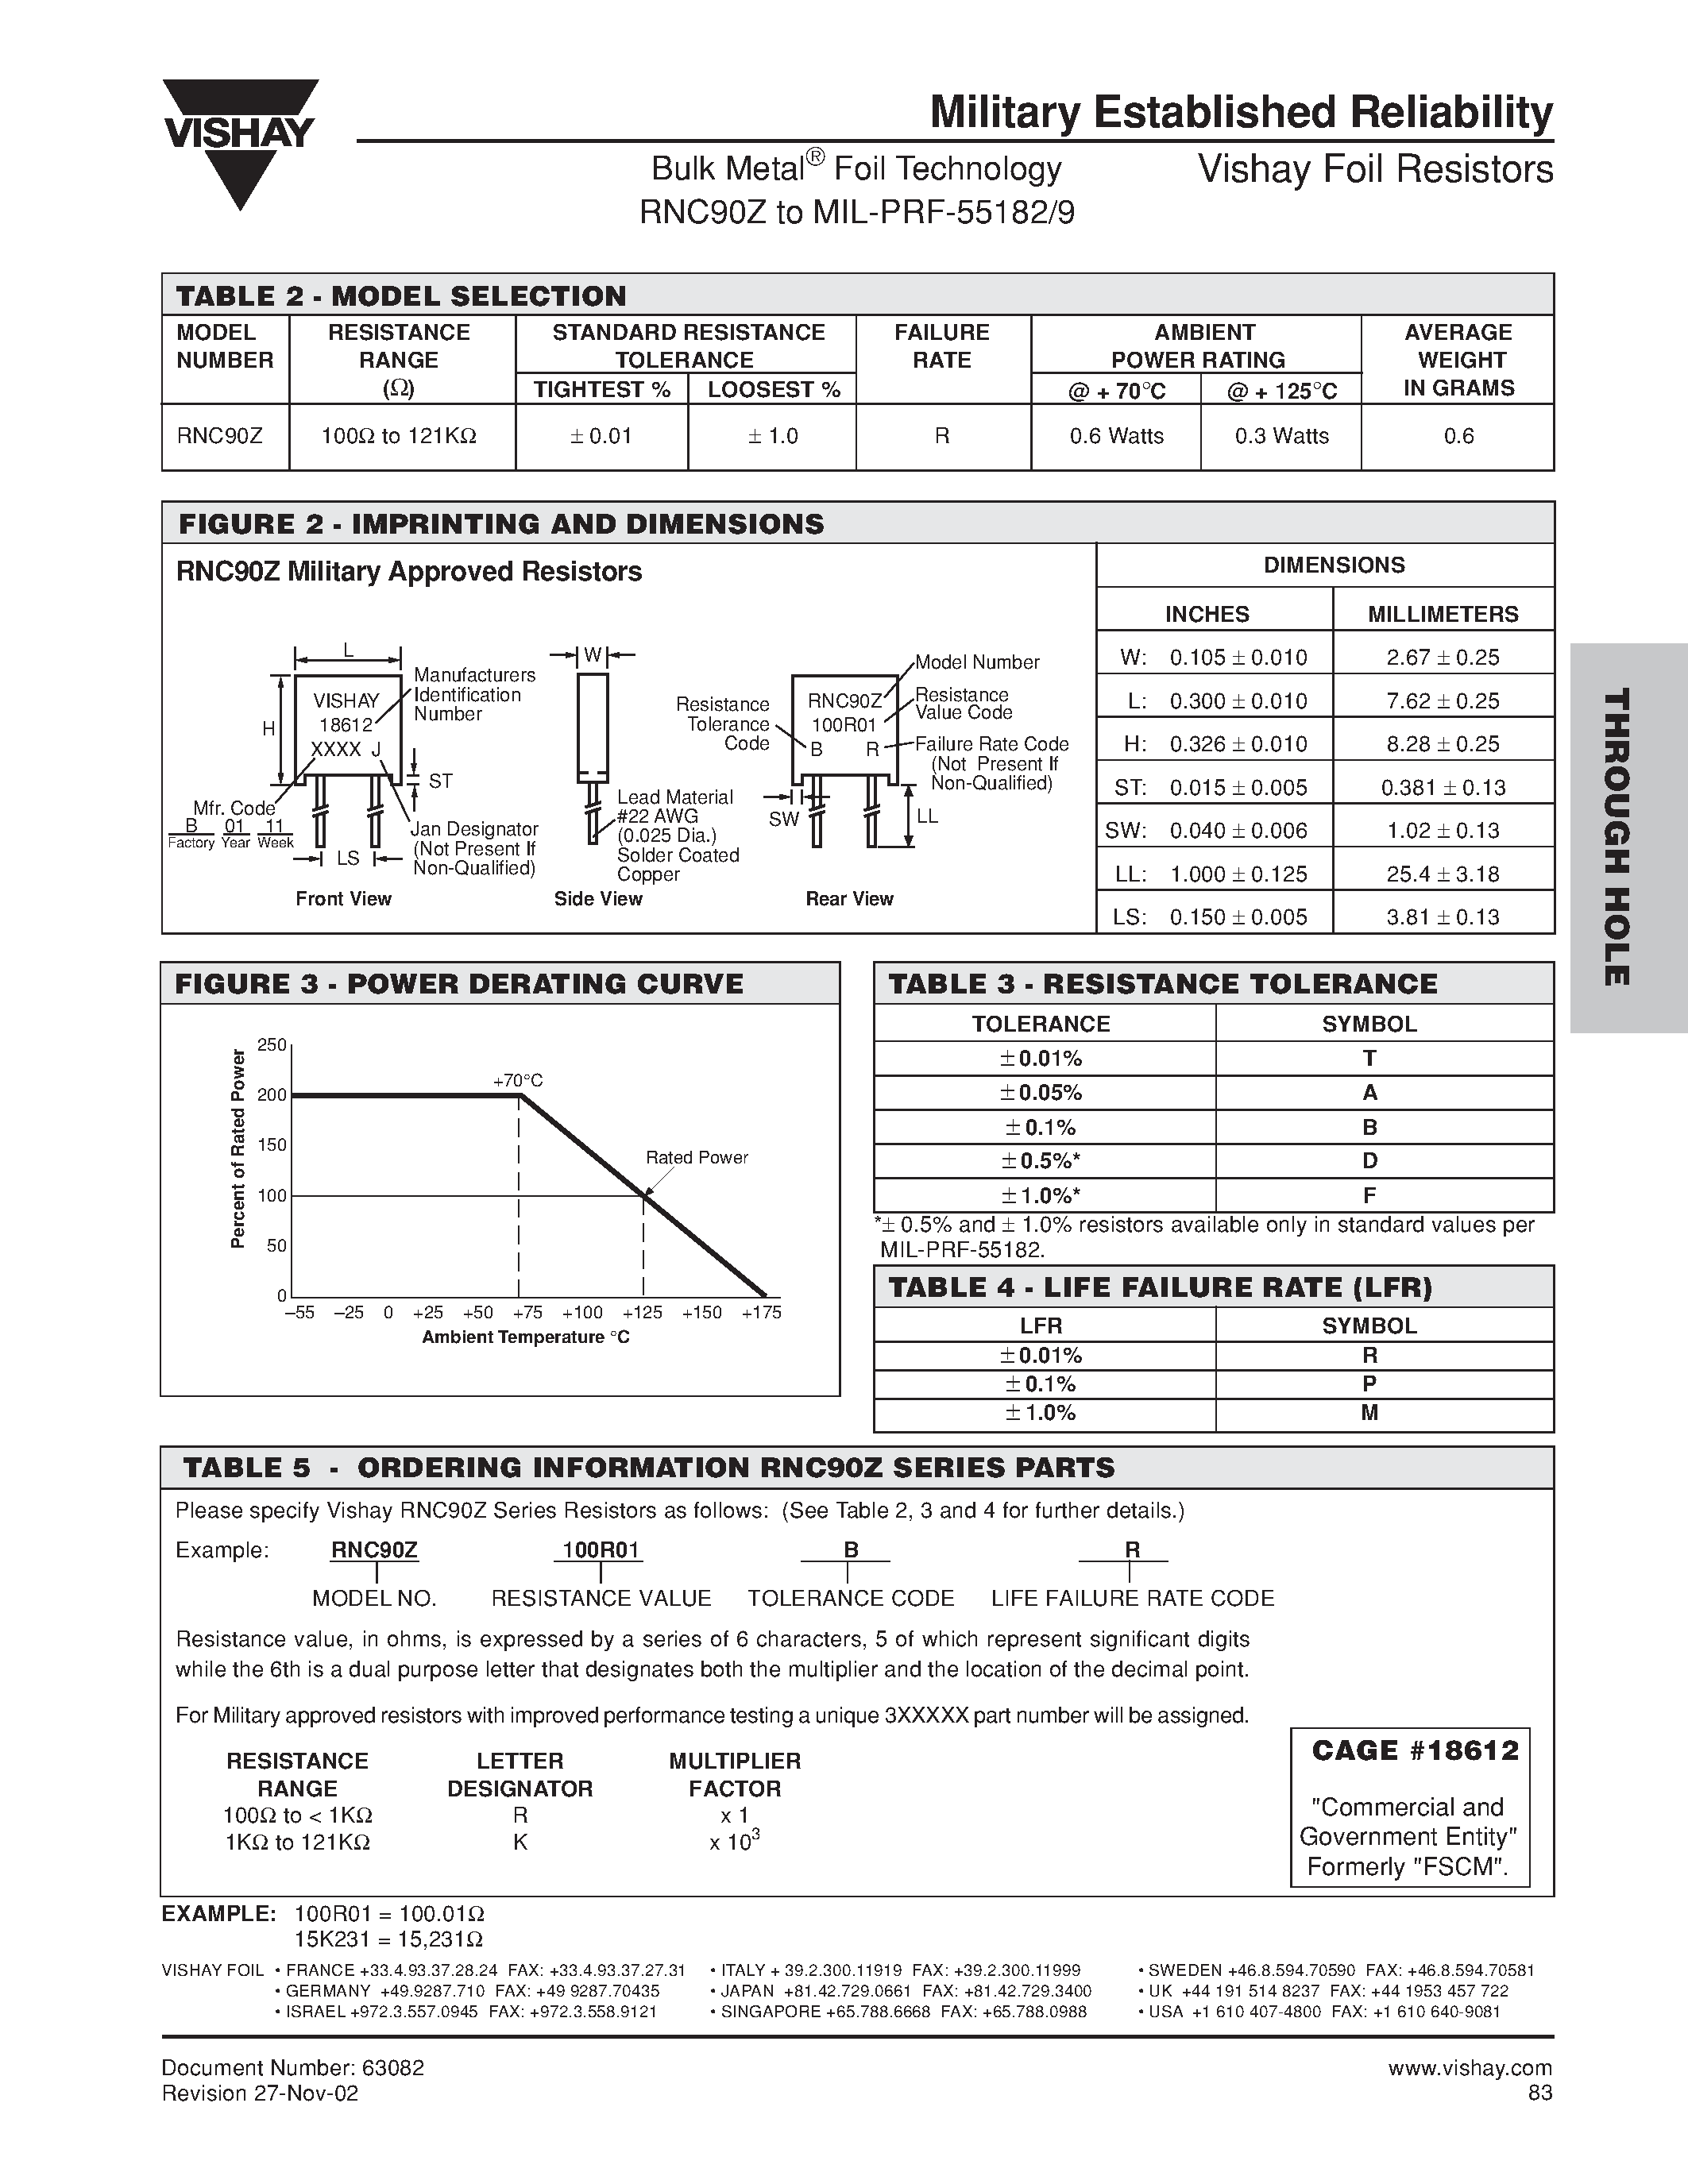 Datasheet RNC90Z - Bulk Metal Foil Technology / RNC90Z to MIL-PRF-55182/9 page 2